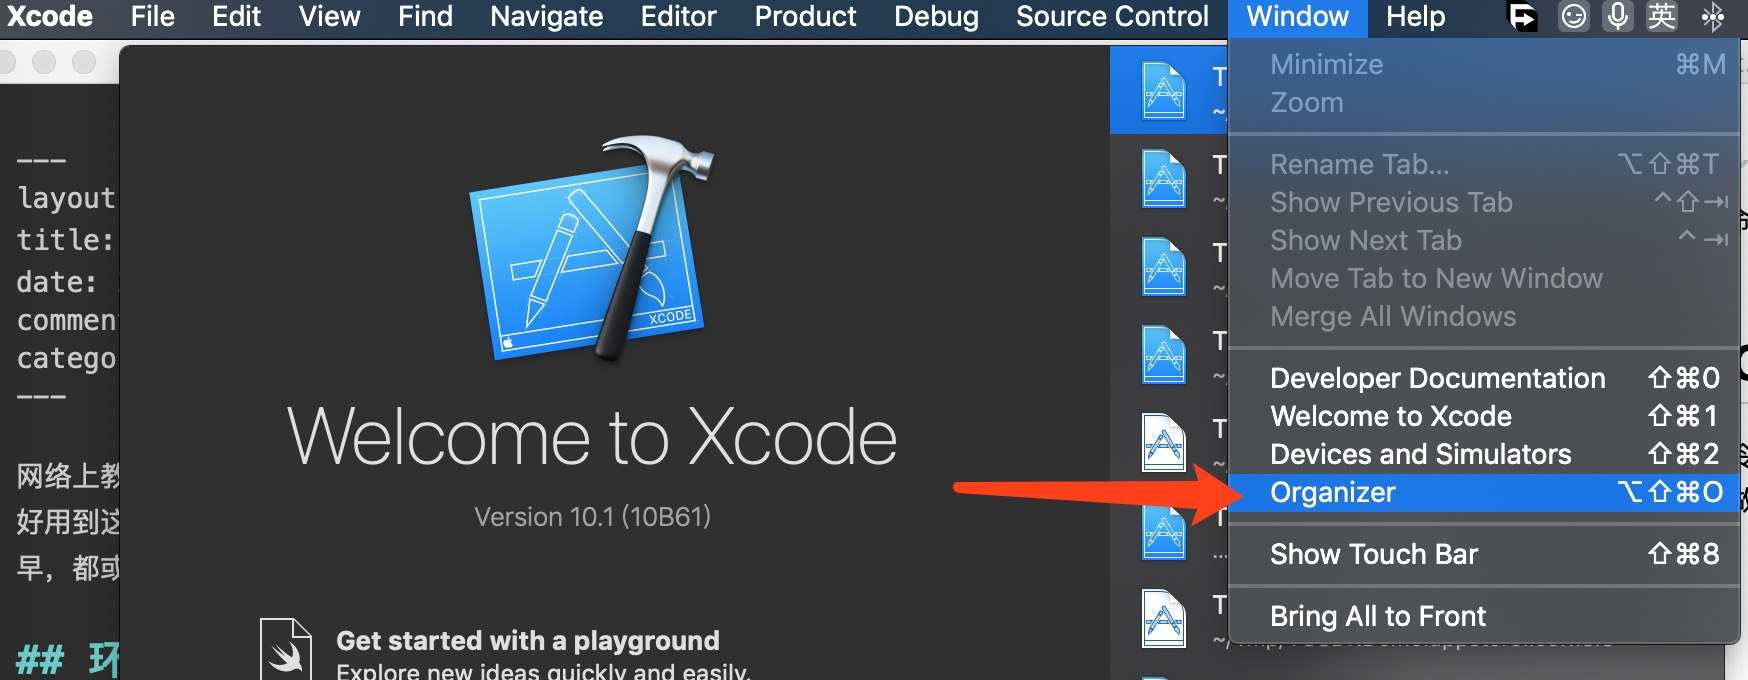 1、打开 Xcode Orgnaizer